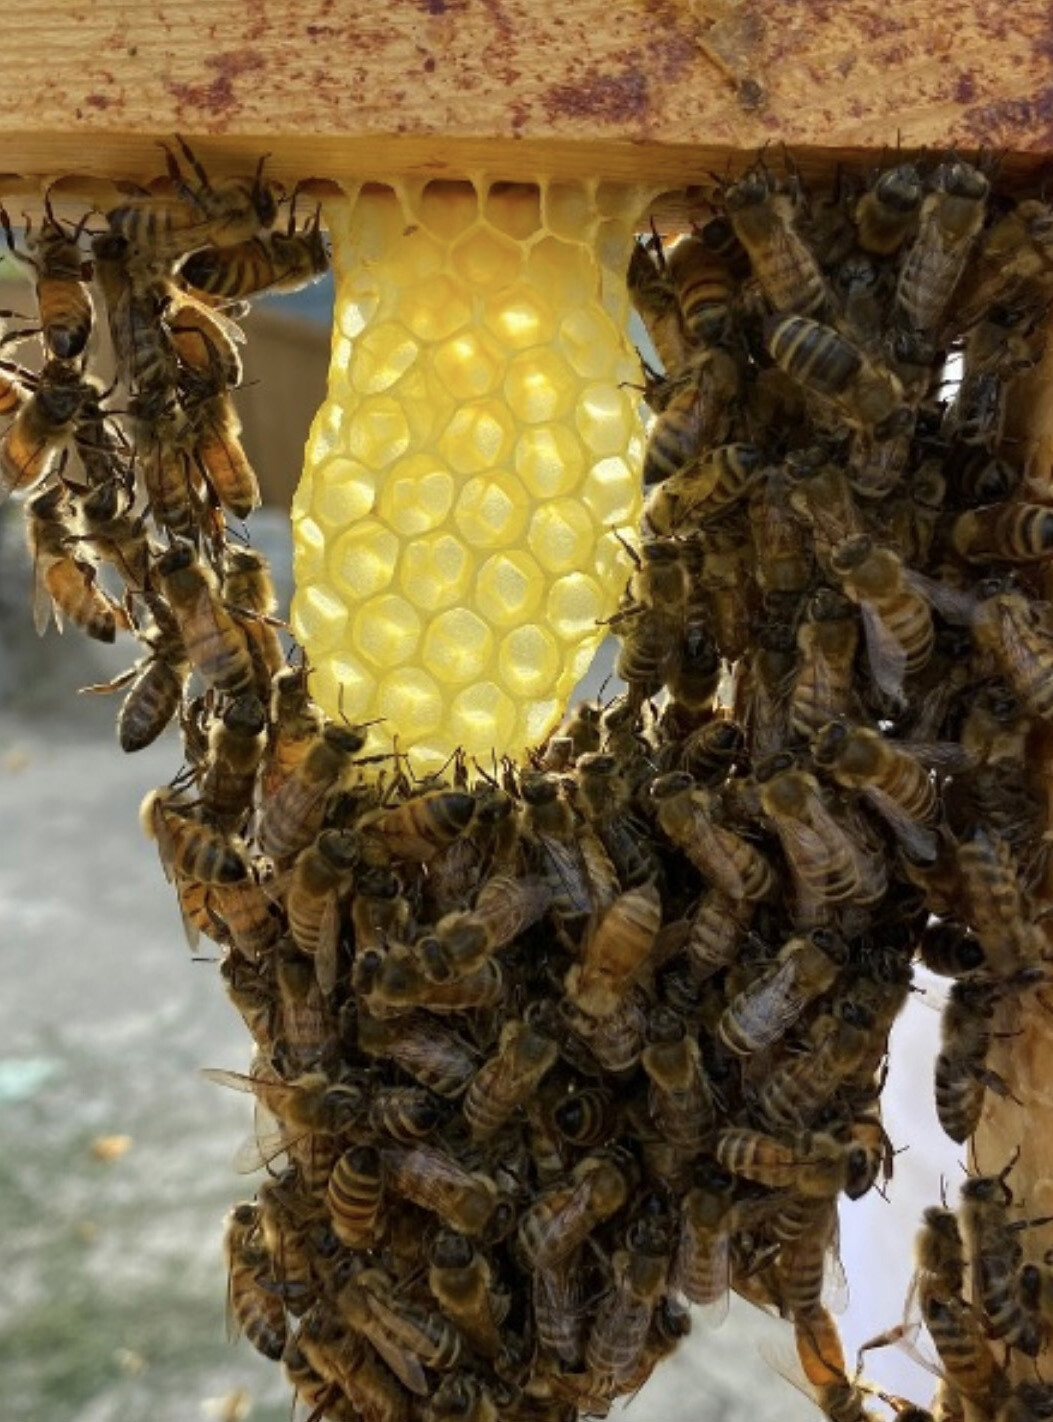 Bees making wax